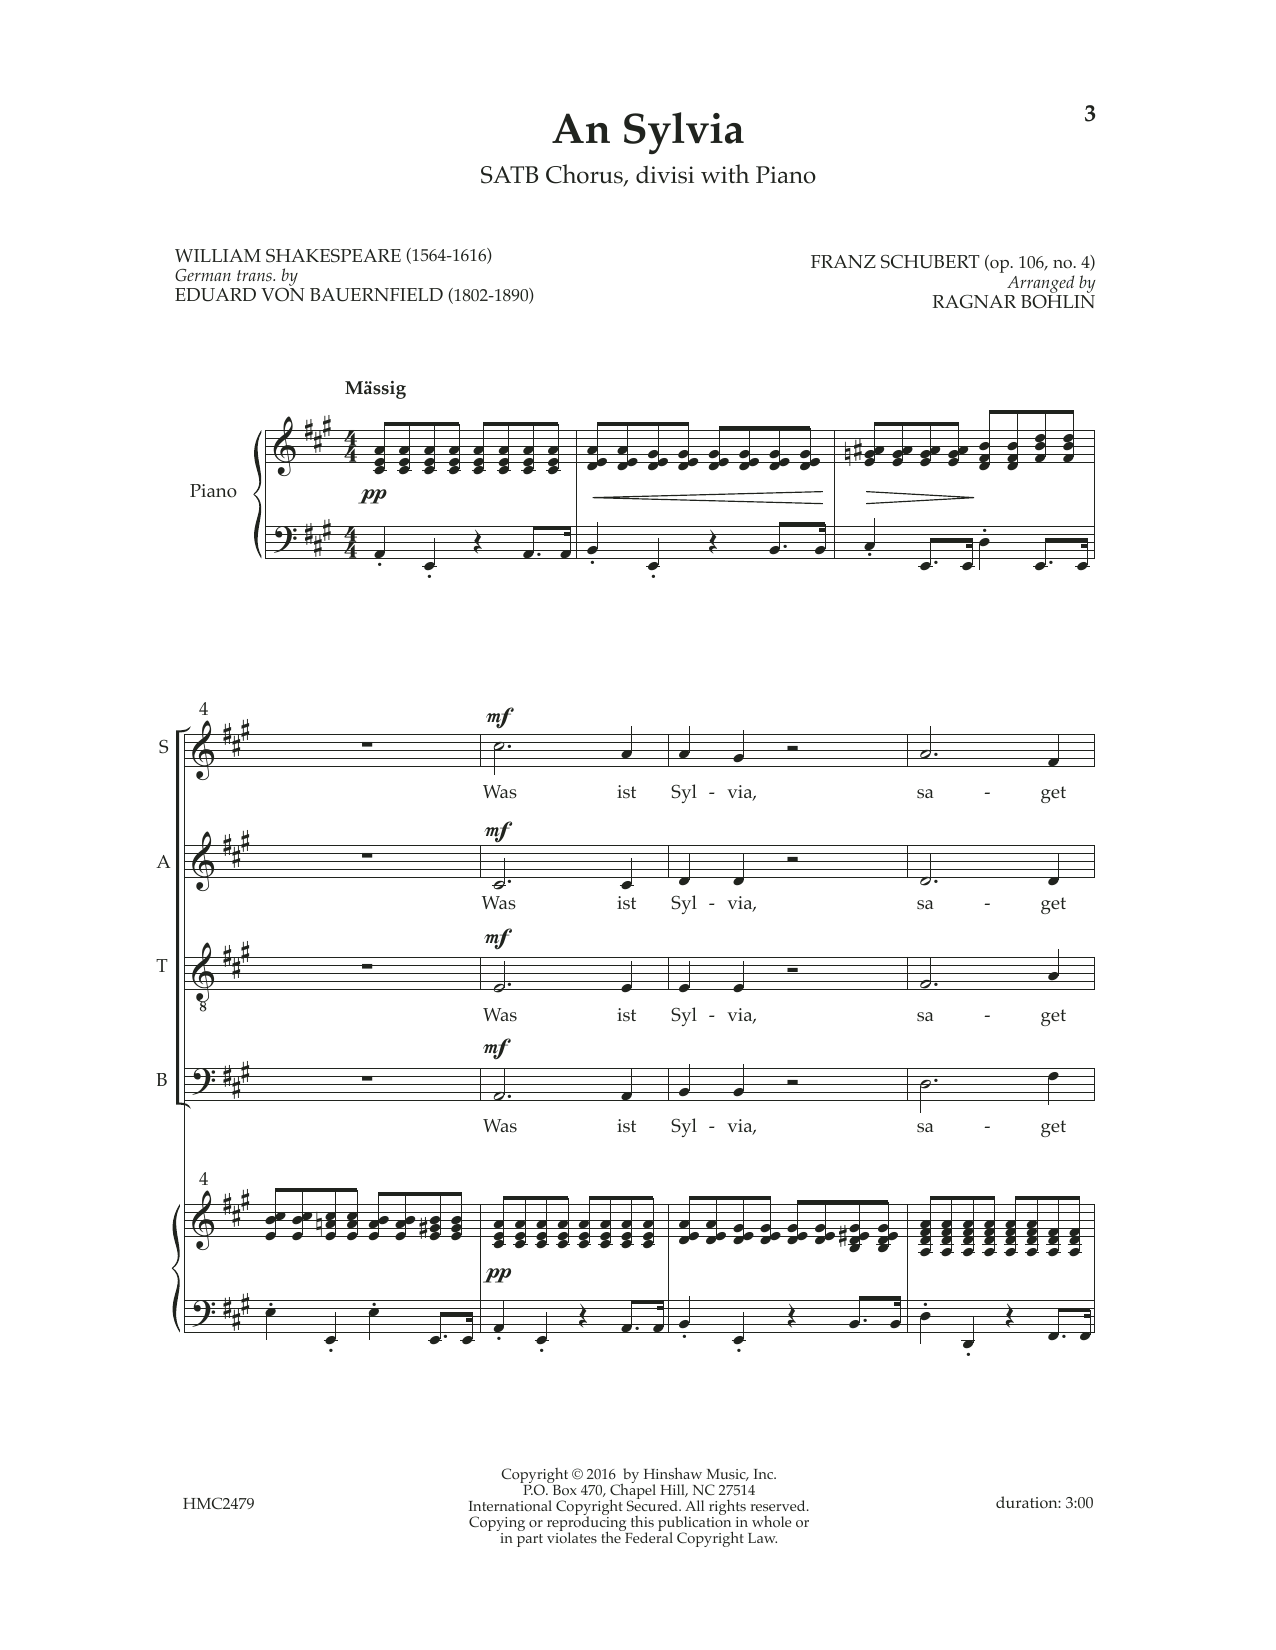 Franz Schubert An Sylvia (op. 106, No. 4) (arr. Ragnar Bohlin) sheet music notes and chords arranged for SATB Choir